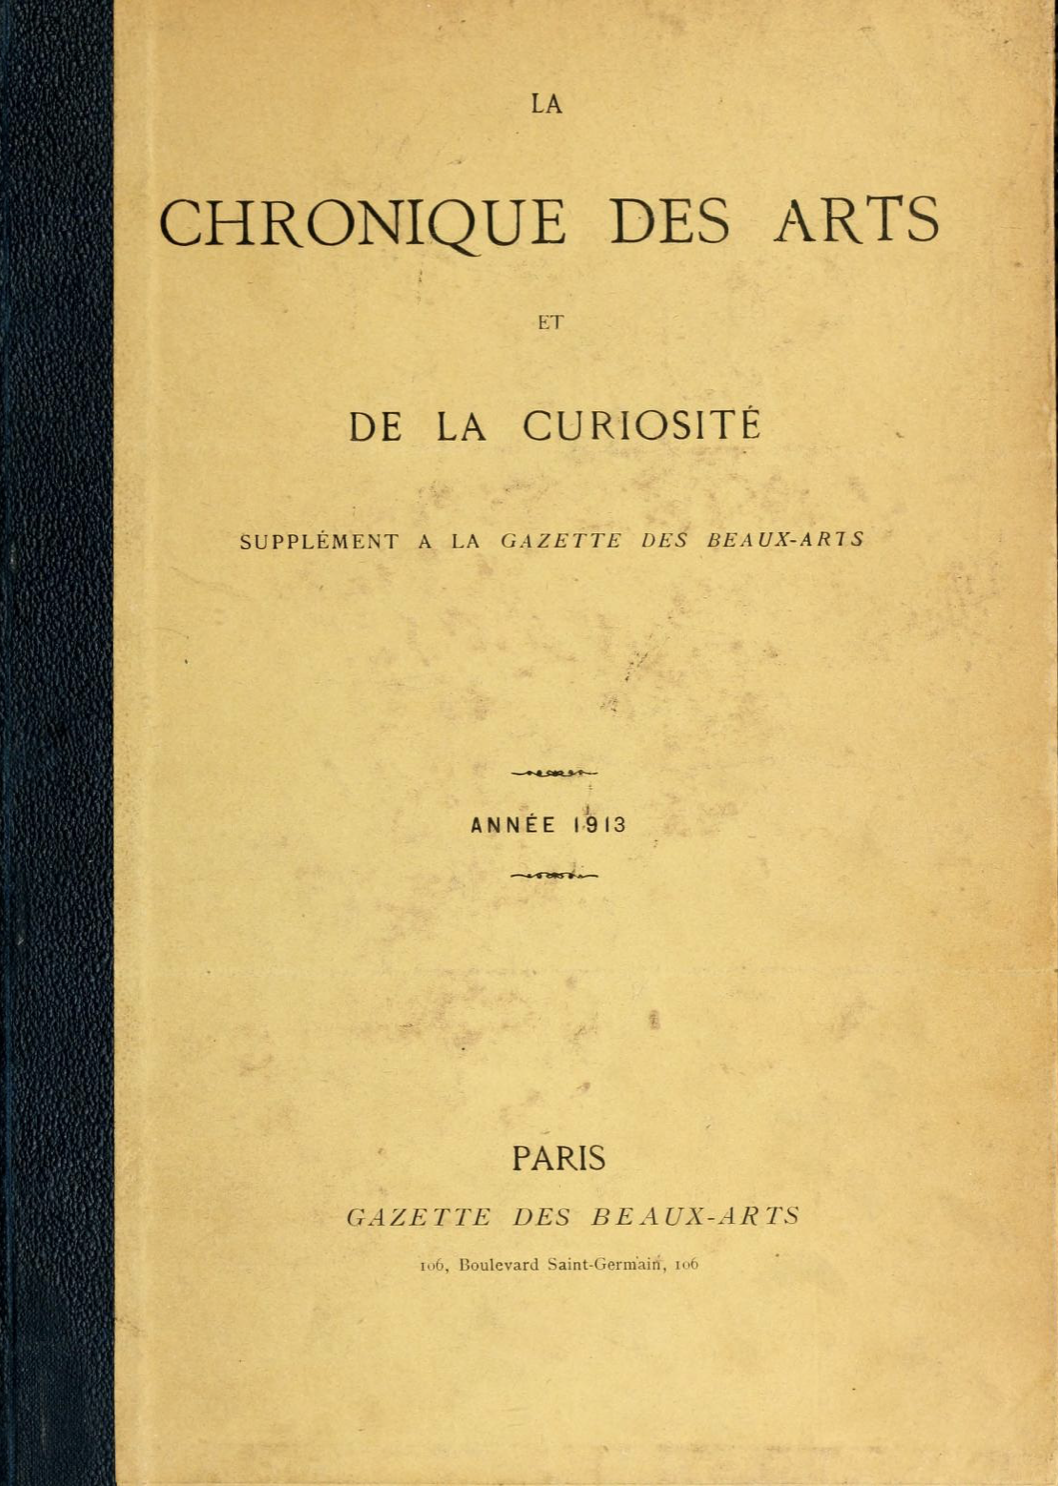 Chronique des Arts et de la Curiosité, Gazette des Beaux-Arts, 1913 (Copy)